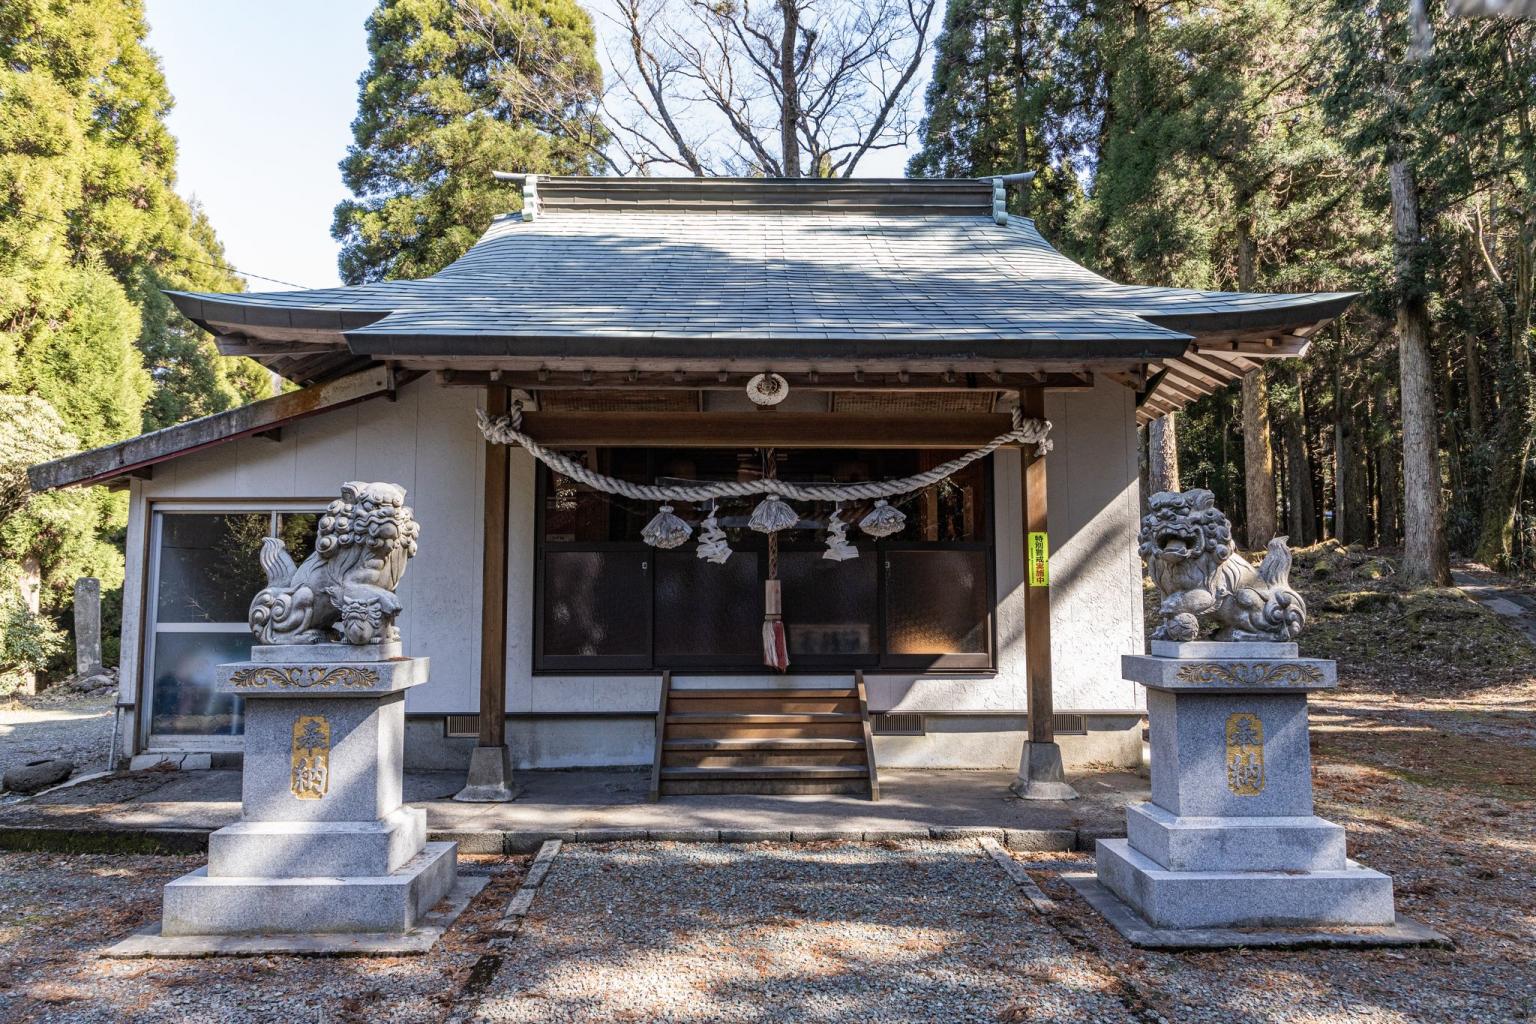 尾下菅原神社 観光地 公式 熊本県観光サイト もっと もーっと くまもっと